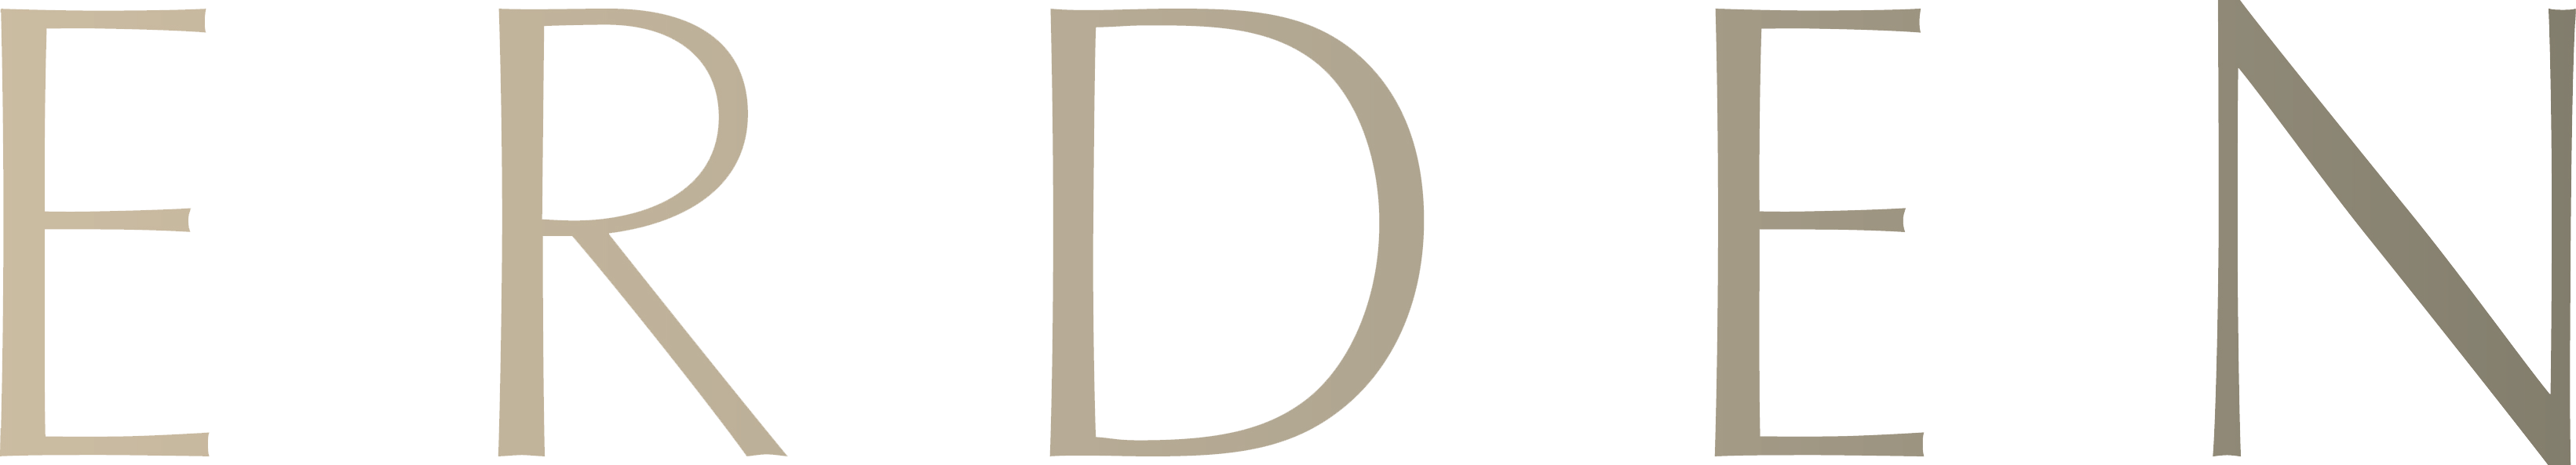 erden logo